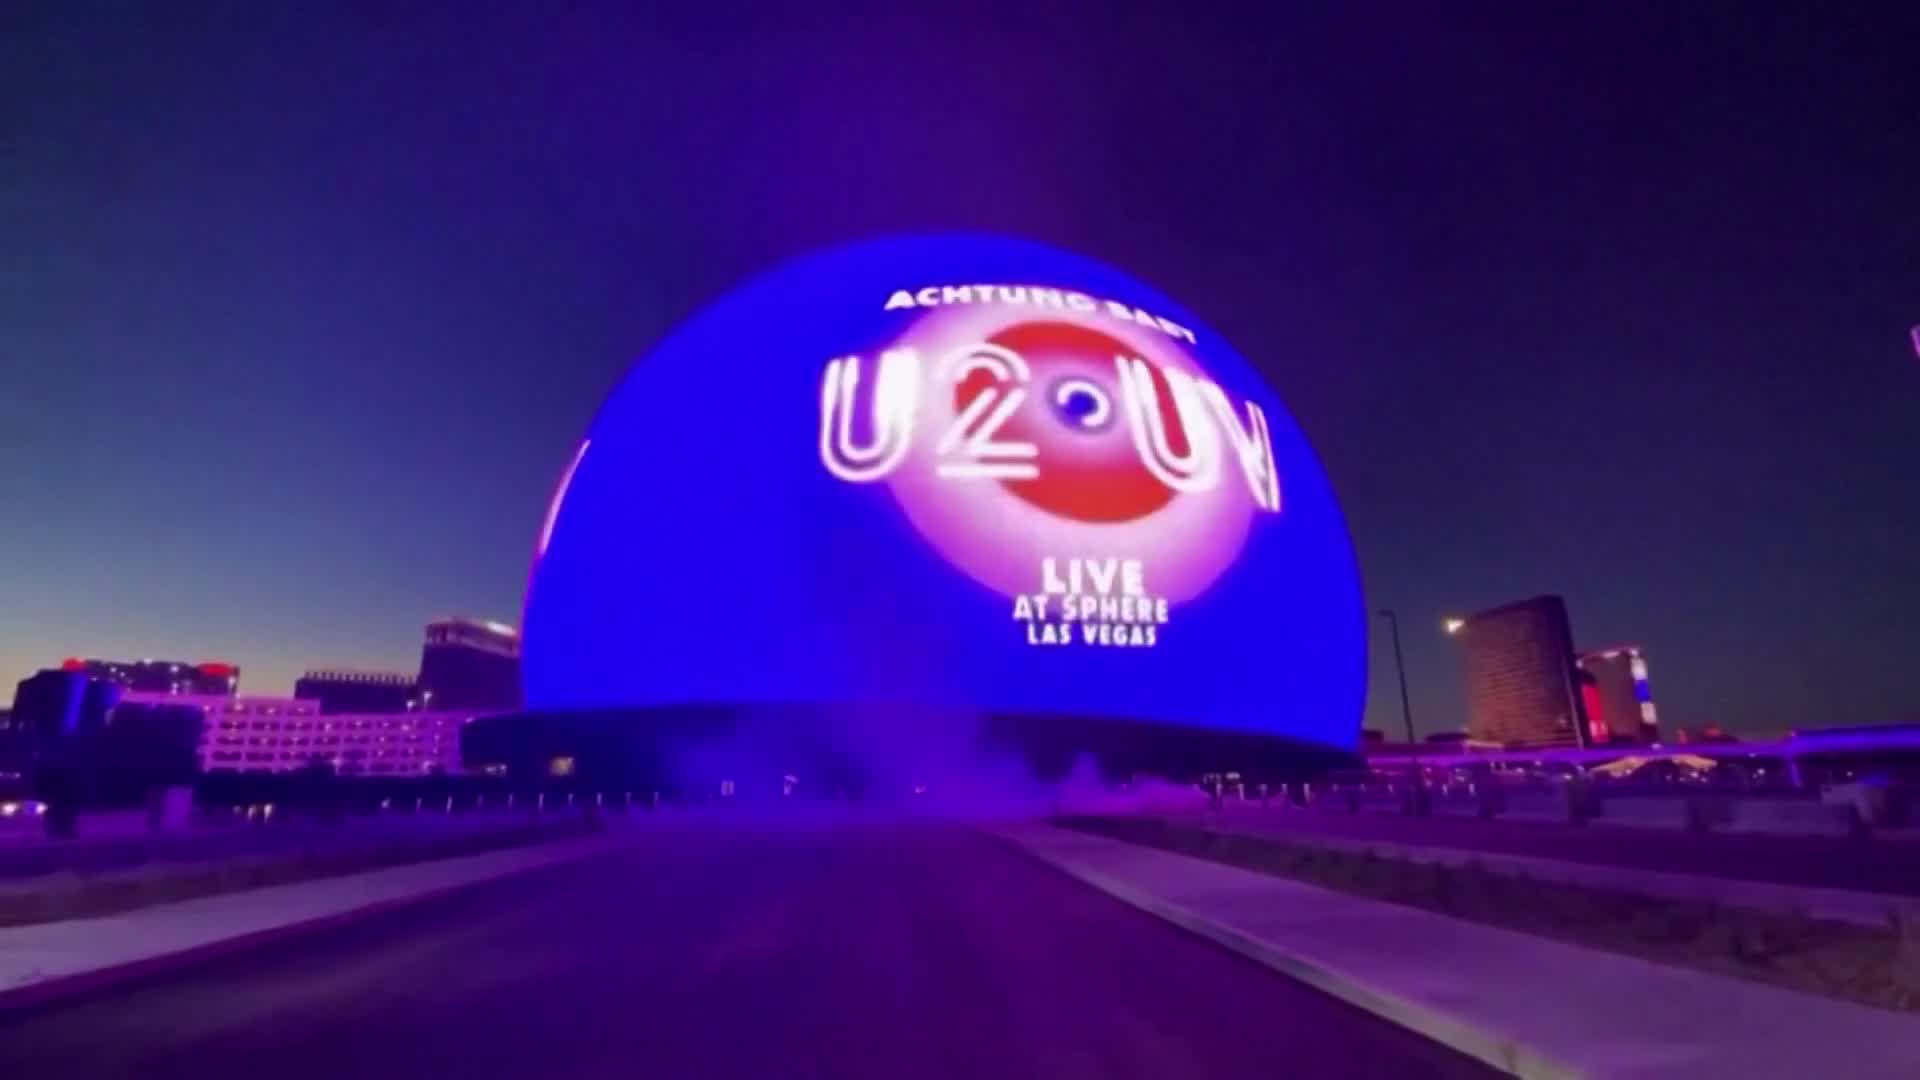 Show do U2 inaugura esfera gigante, com área maior que três campos de futebol, em Las Vegas